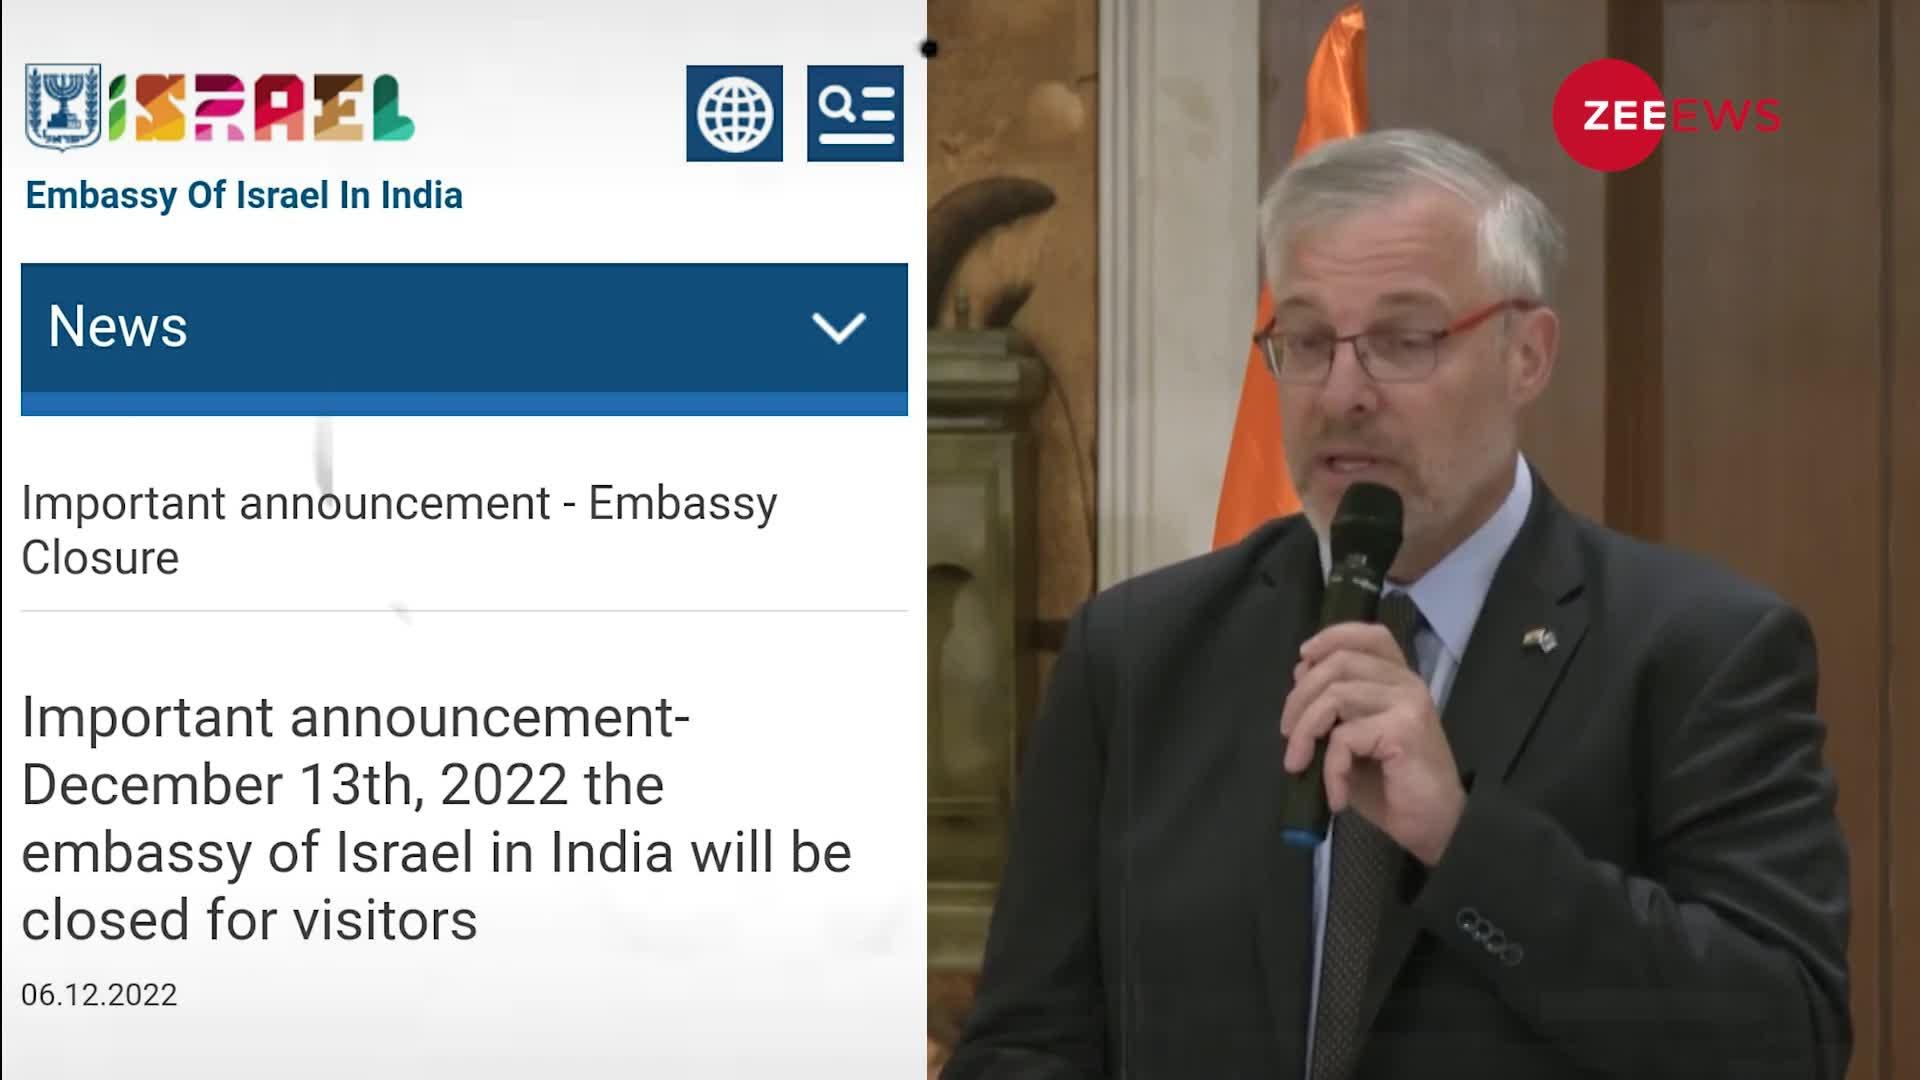 भारत में अचानक बंद हुआ Israel का दूतावास, कई देशों में हलचल